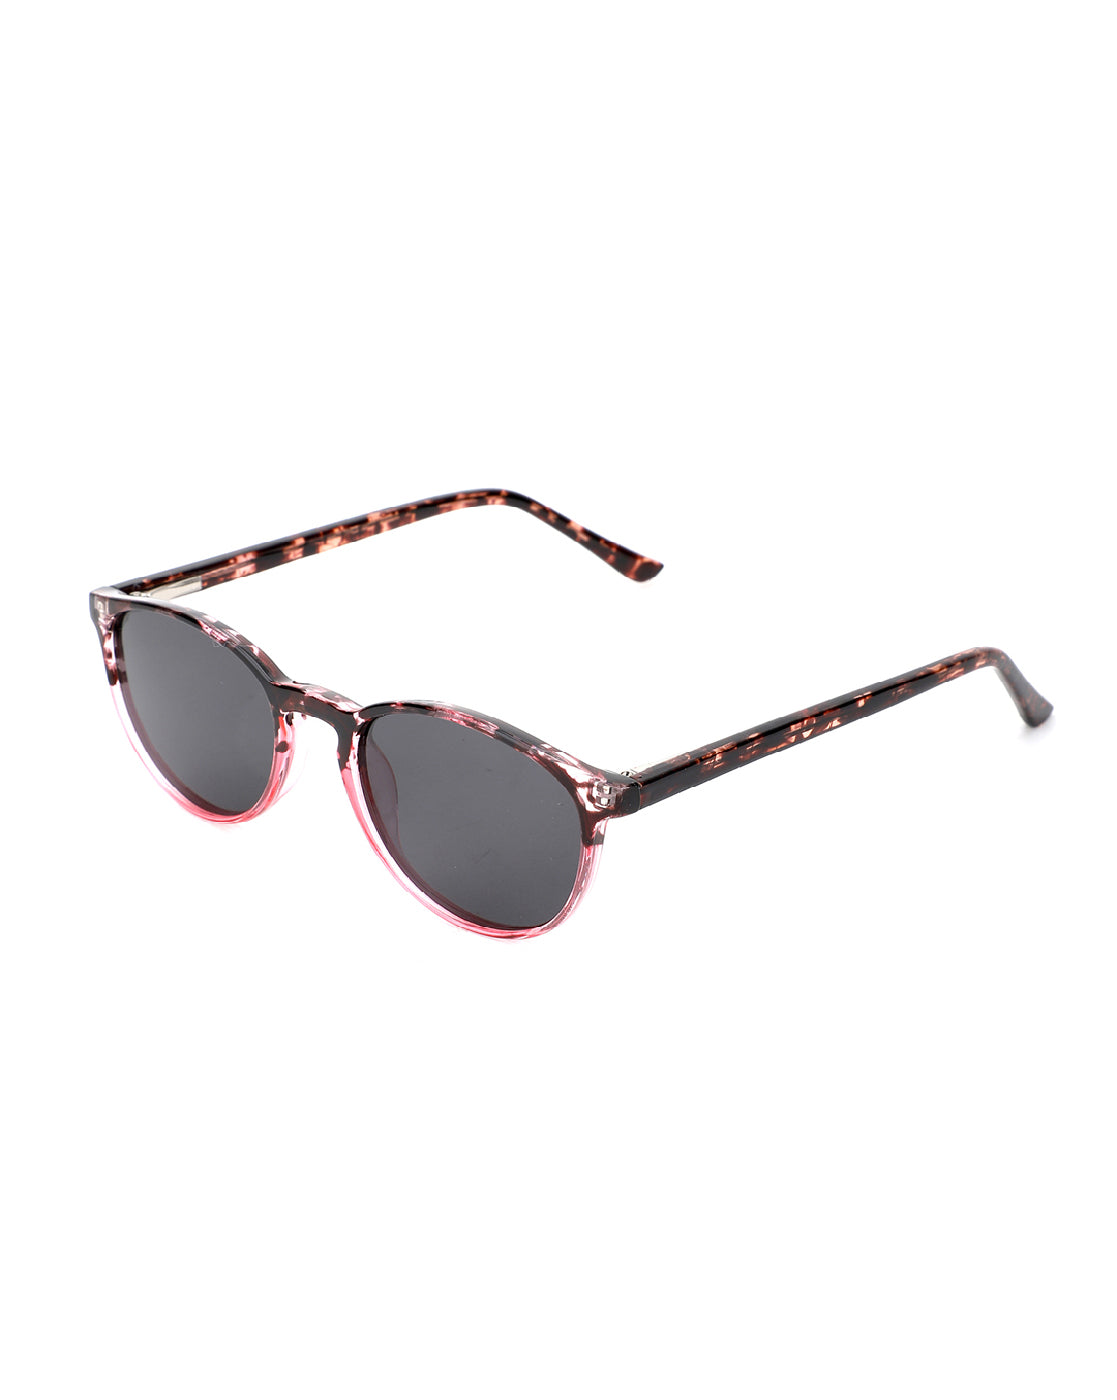 Buy M'Chashma Wayfarer Sunglasses Black For Women Online @ Best Prices in  India | Flipkart.com